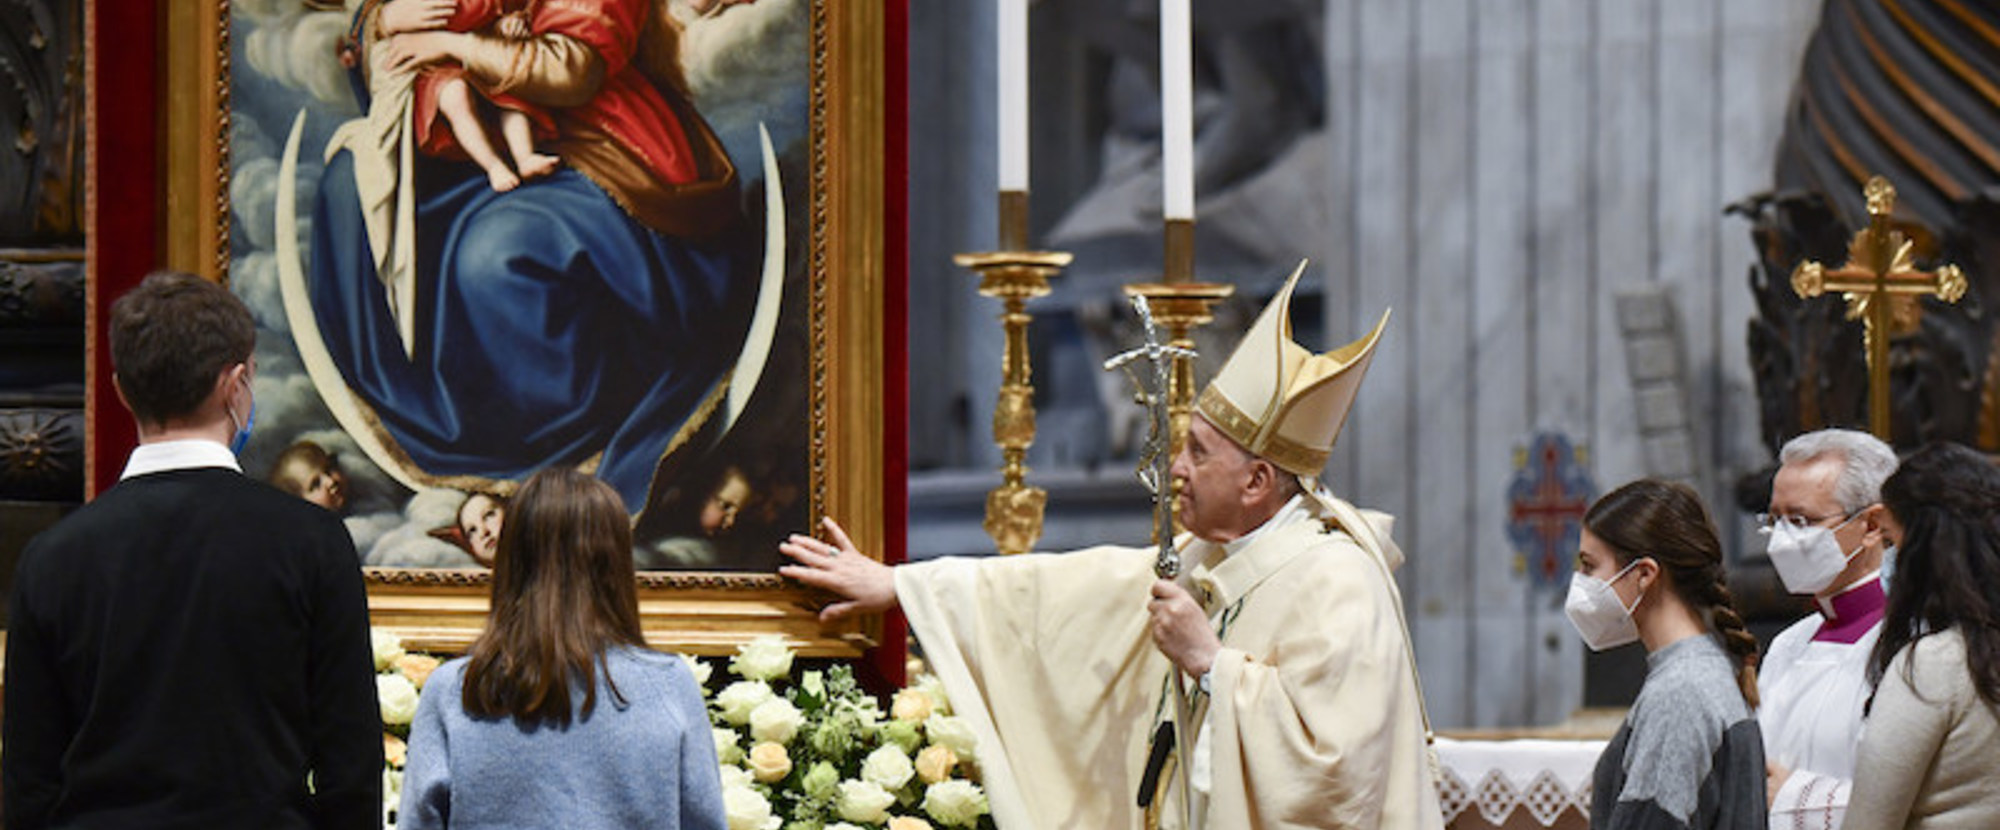 Papst Franziskus berührt das Gemälde einer Madonna, während des Gottesdienstes am Hochfest Christkönig, am 21. November 2021 im Vatikan. Jugendliche stehen um ihn herum.